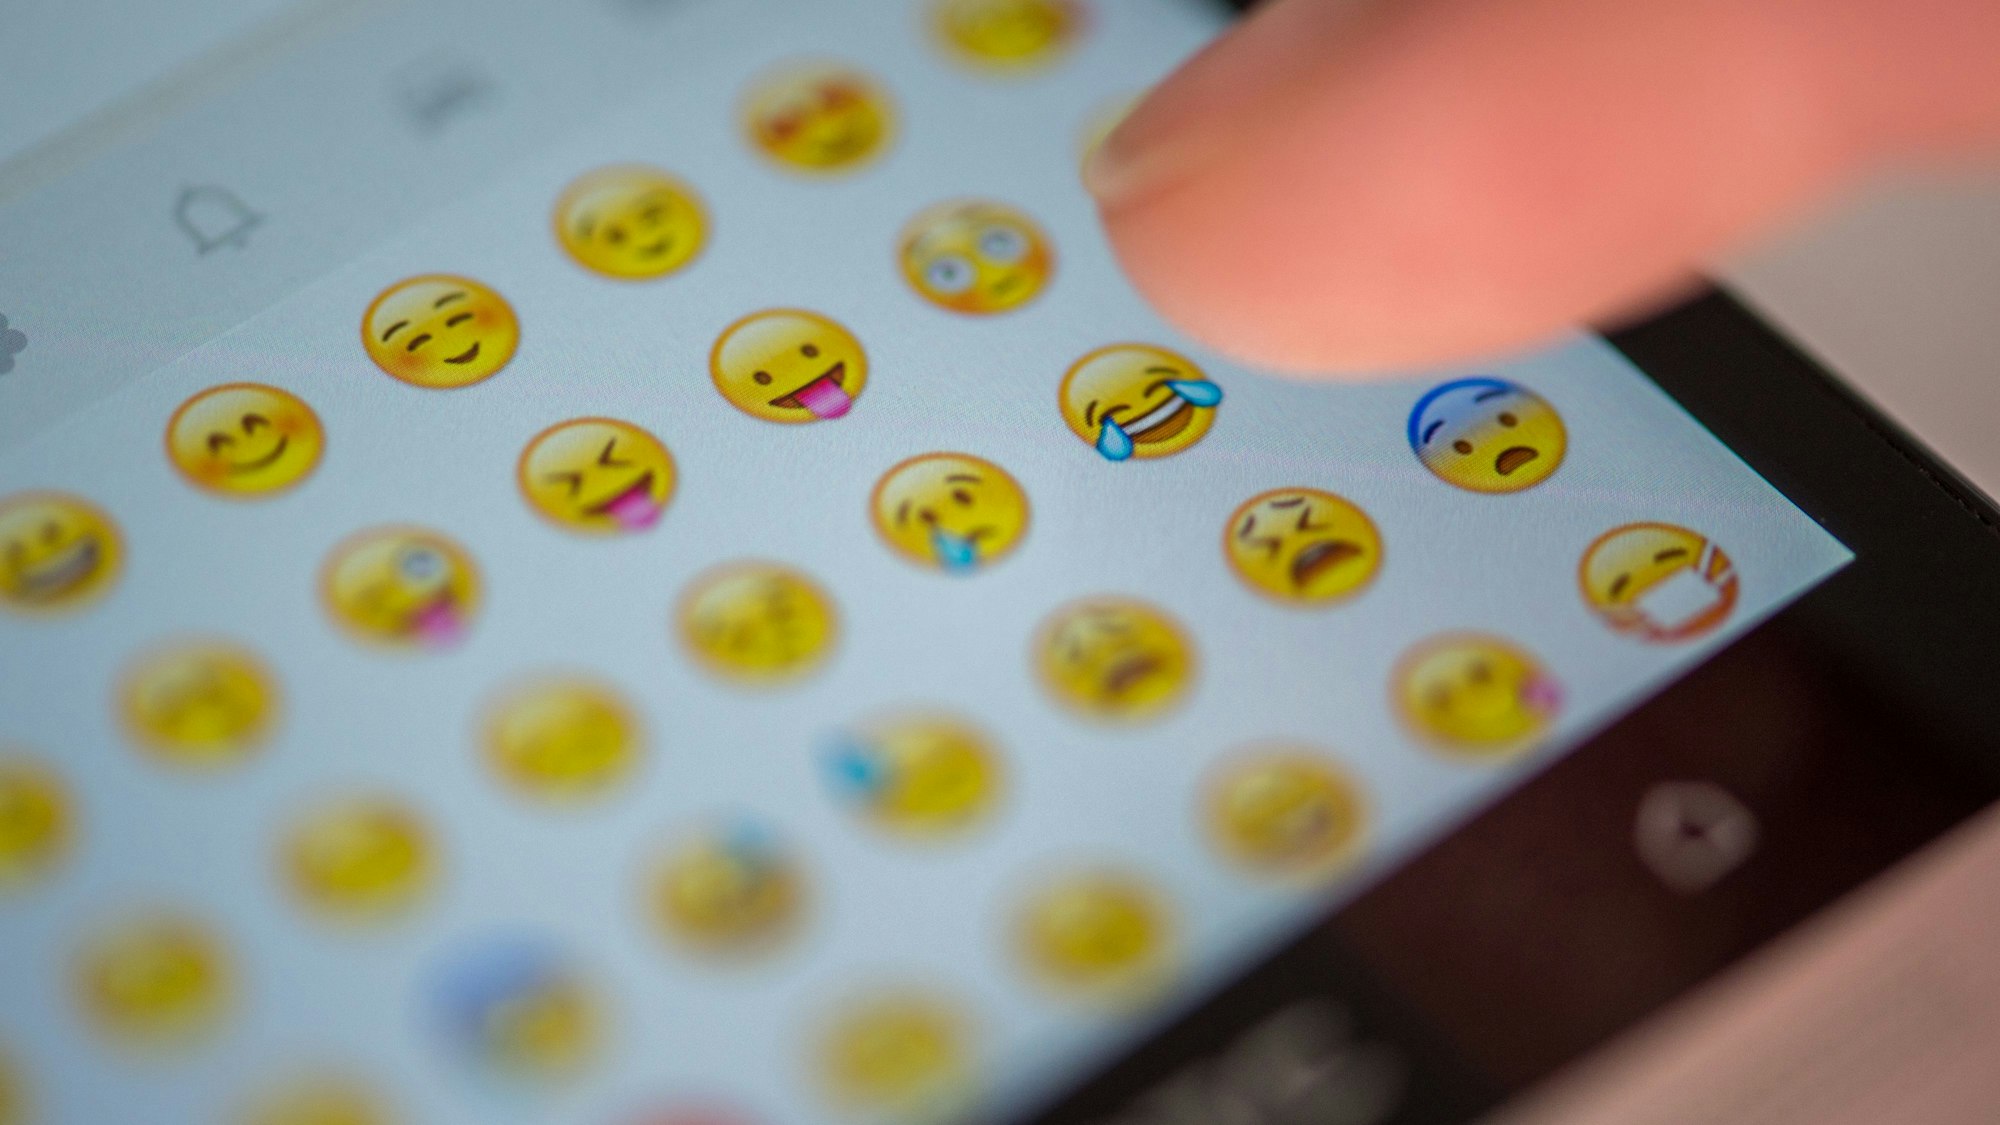 Eine Frau tippt auf das Display eines Smartphones, auf dem zahlreiche Emojis in der Nachrichten-App Whatsapp zu sehen sind.